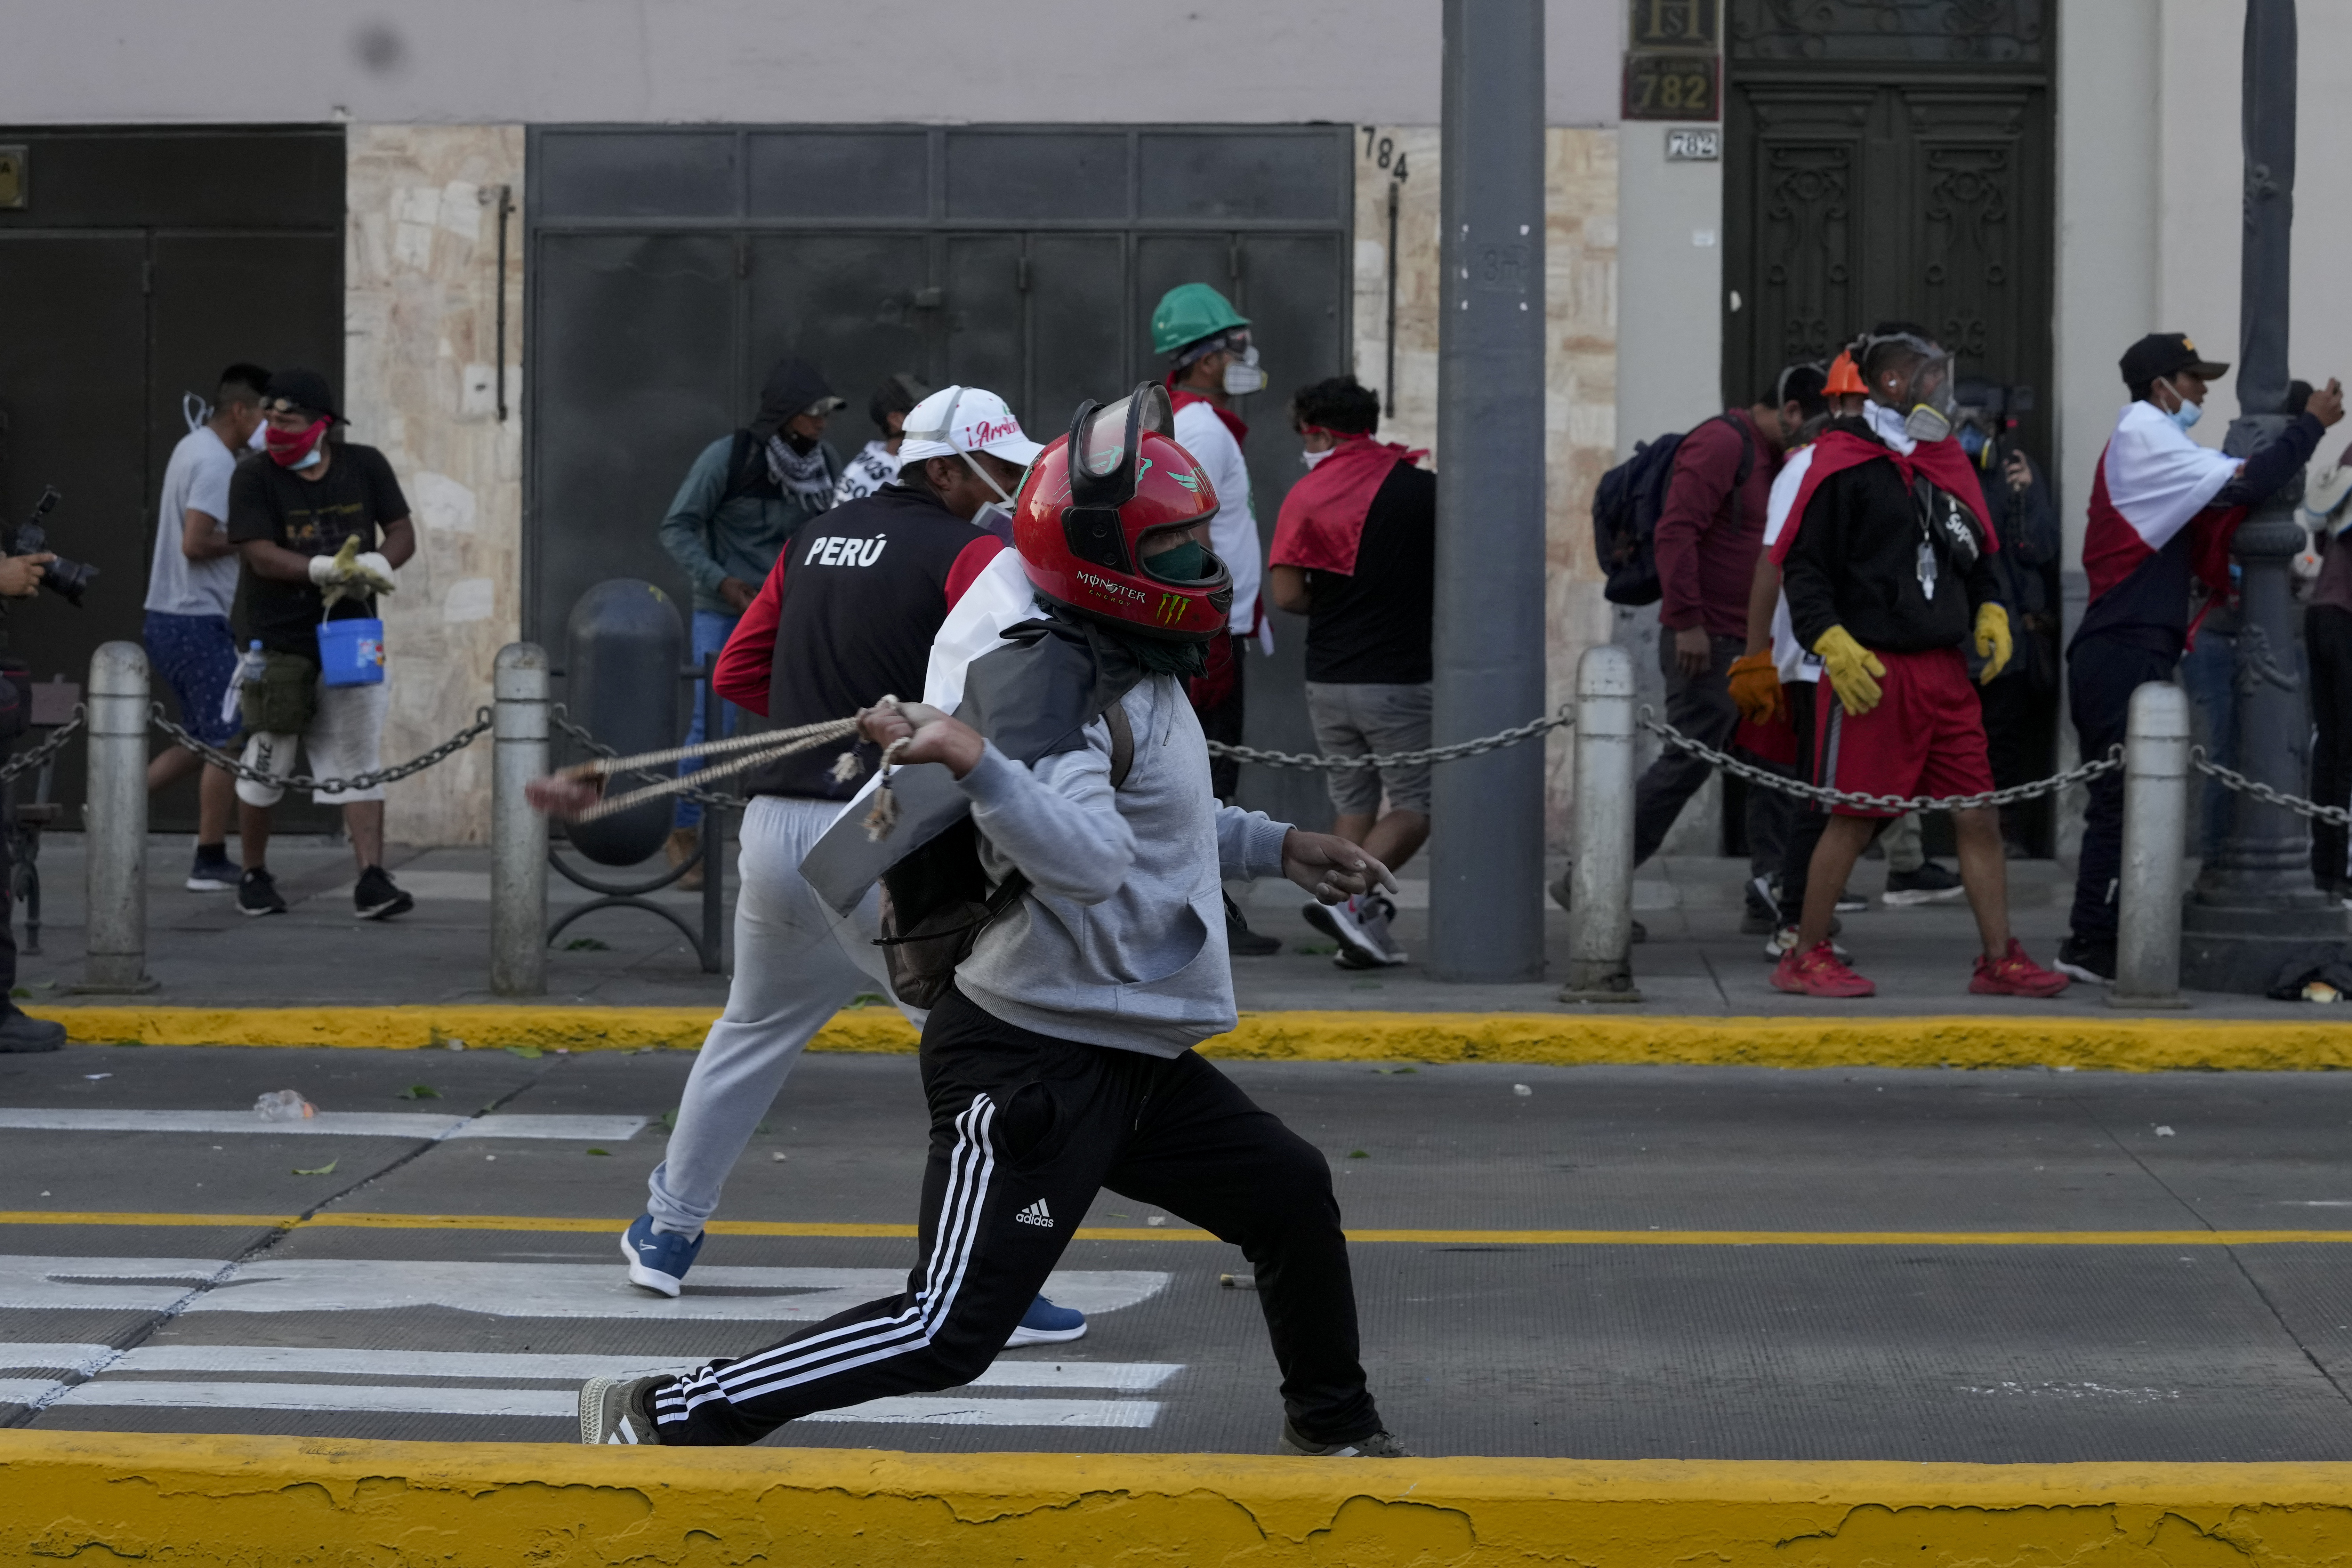 Manifestantes se movilizaron en regiones como Puno, Cusco, Arequipa, Ayacucho, entre otros, para pedir la liberación del expresidente. (AP)